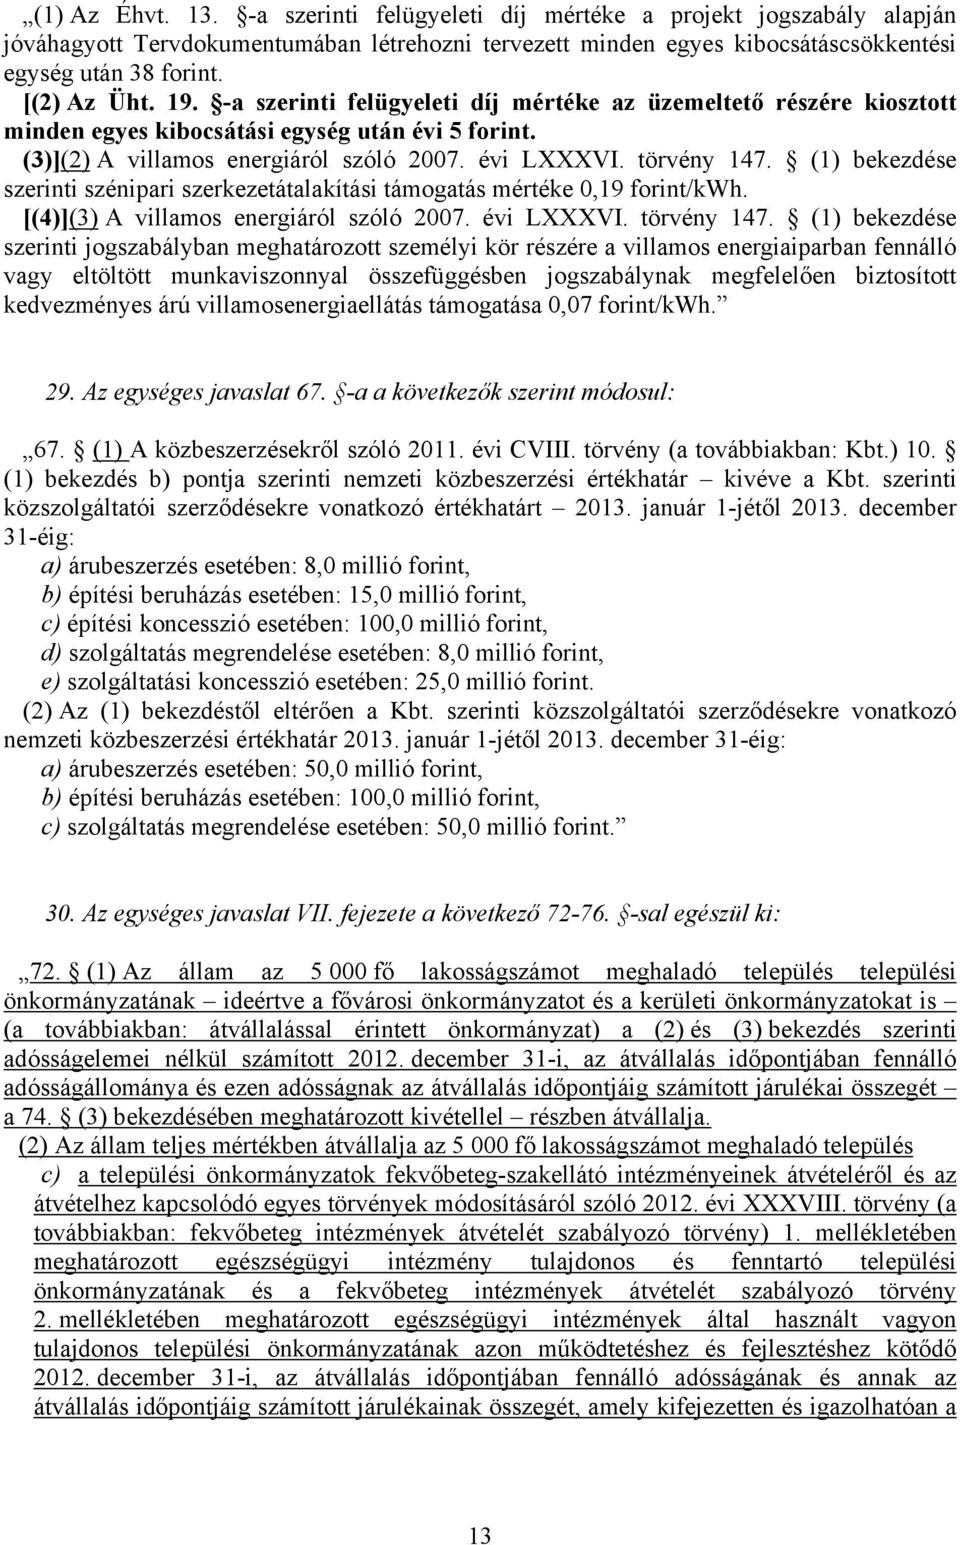 törvény 147. (1) bekezdése szerinti szénipari szerkezetátalakítási támogatás mértéke 0,19 forint/kwh. [(4)](3) A villamos energiáról szóló 2007. évi LXXXVI. törvény 147.